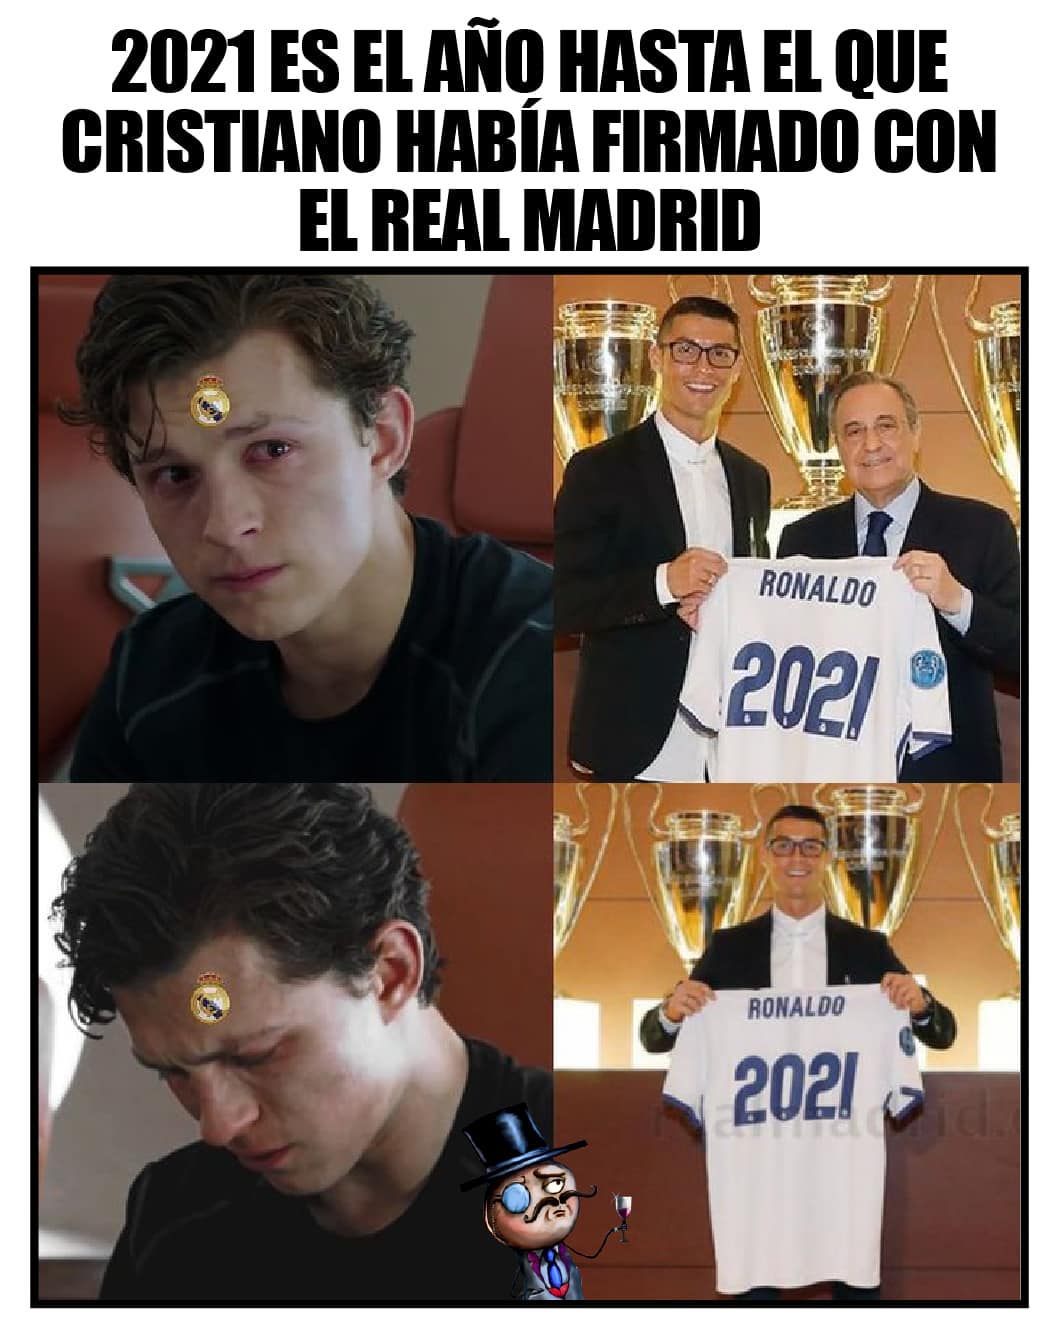 2021 es el año hasta el que Cristiano había firmado con el Real Madrid.